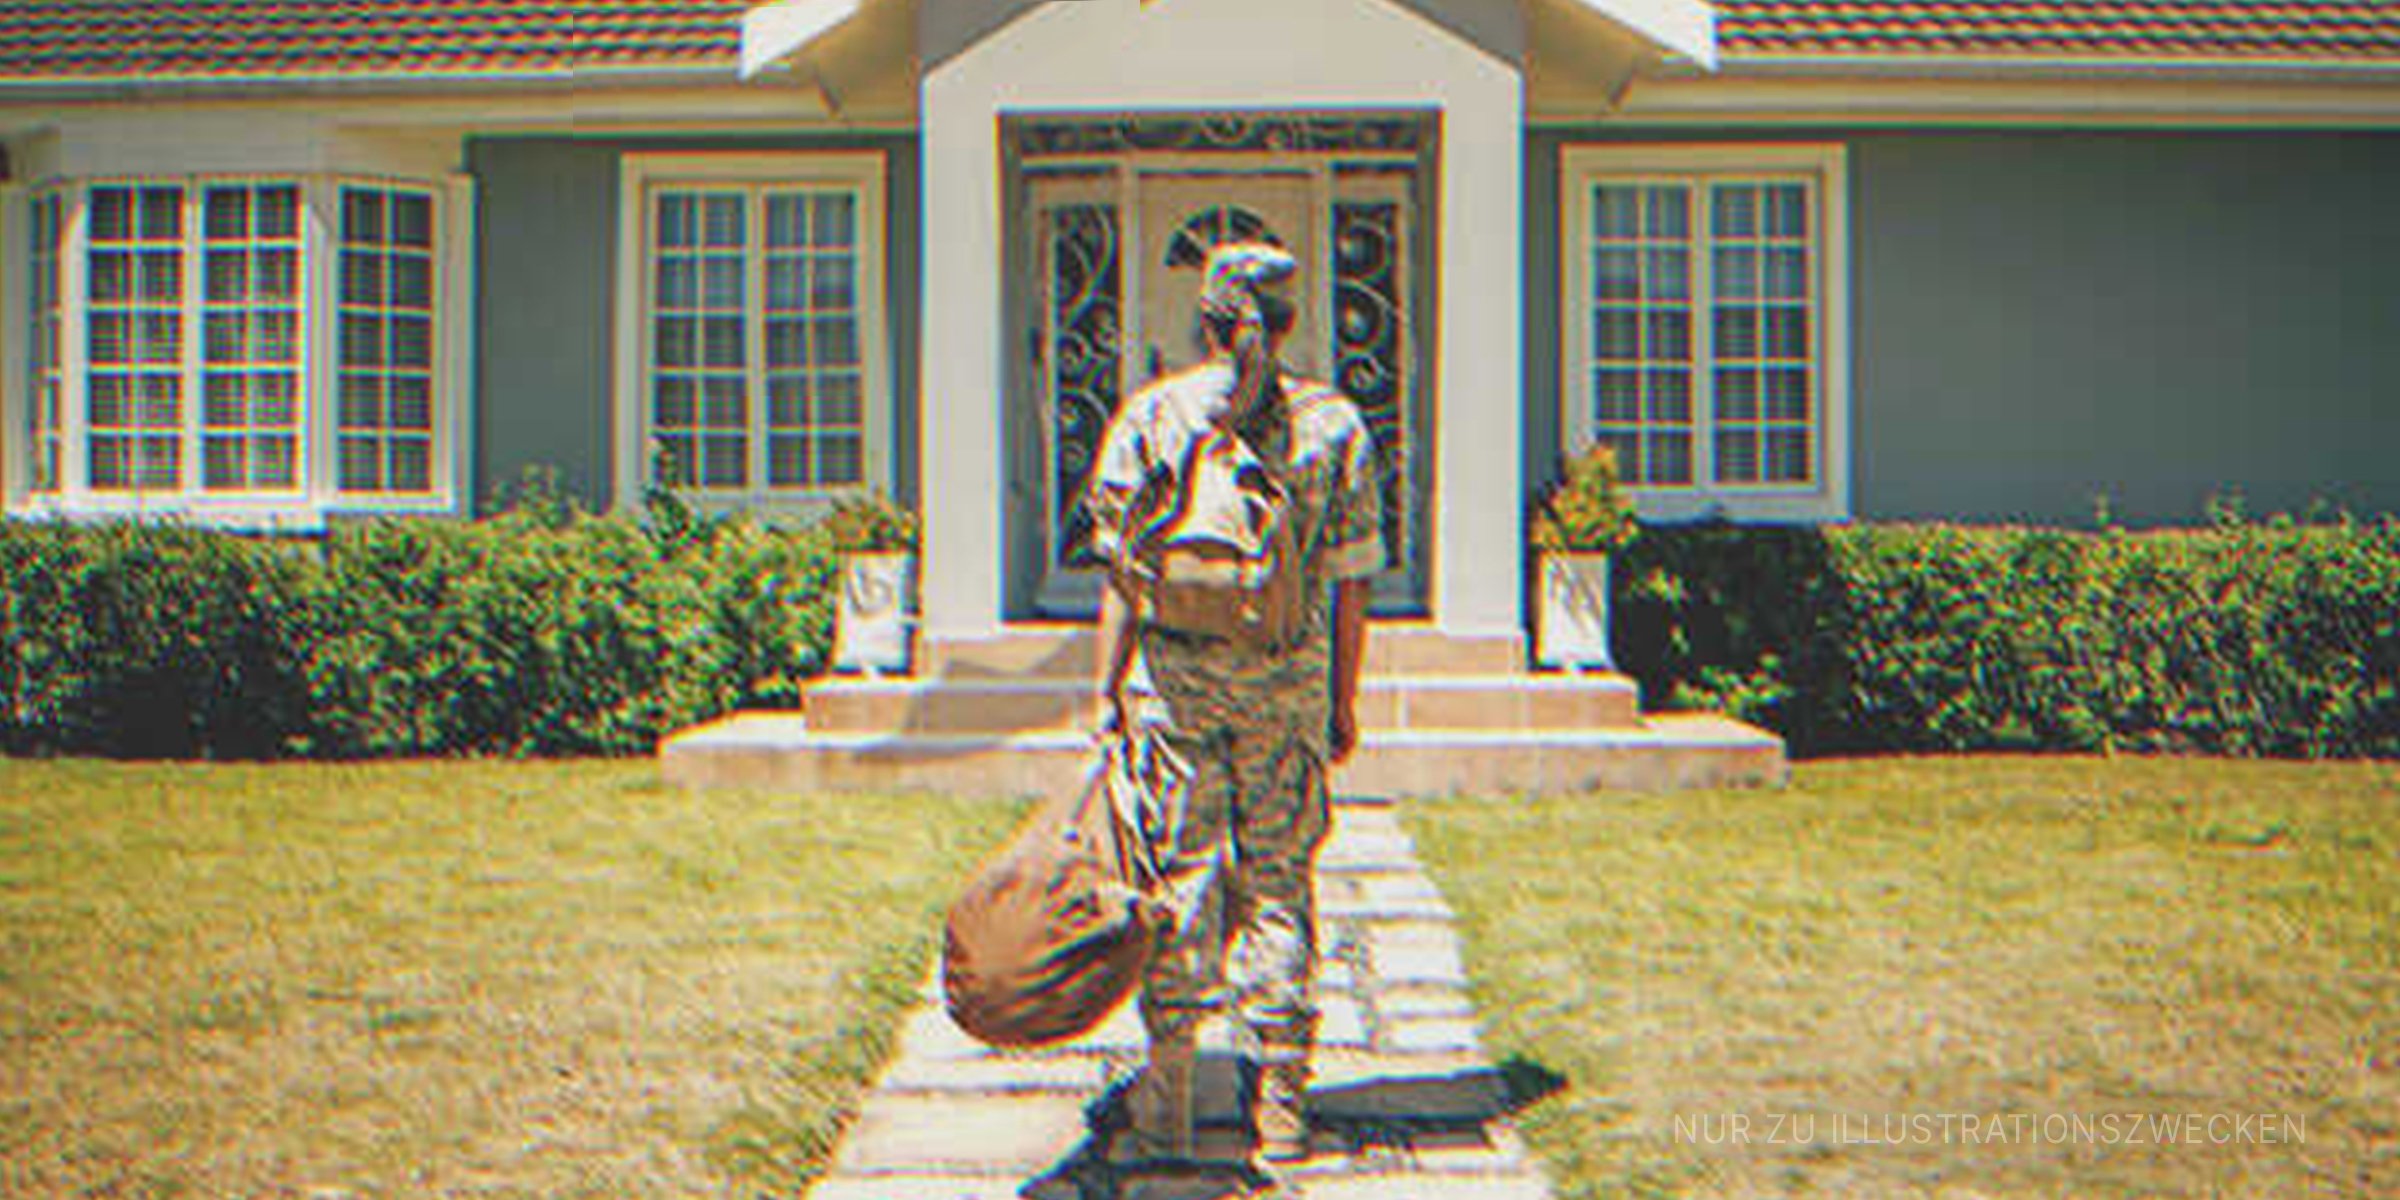 Eine Soldatin vor einem Haus | Quelle: Shutterstock